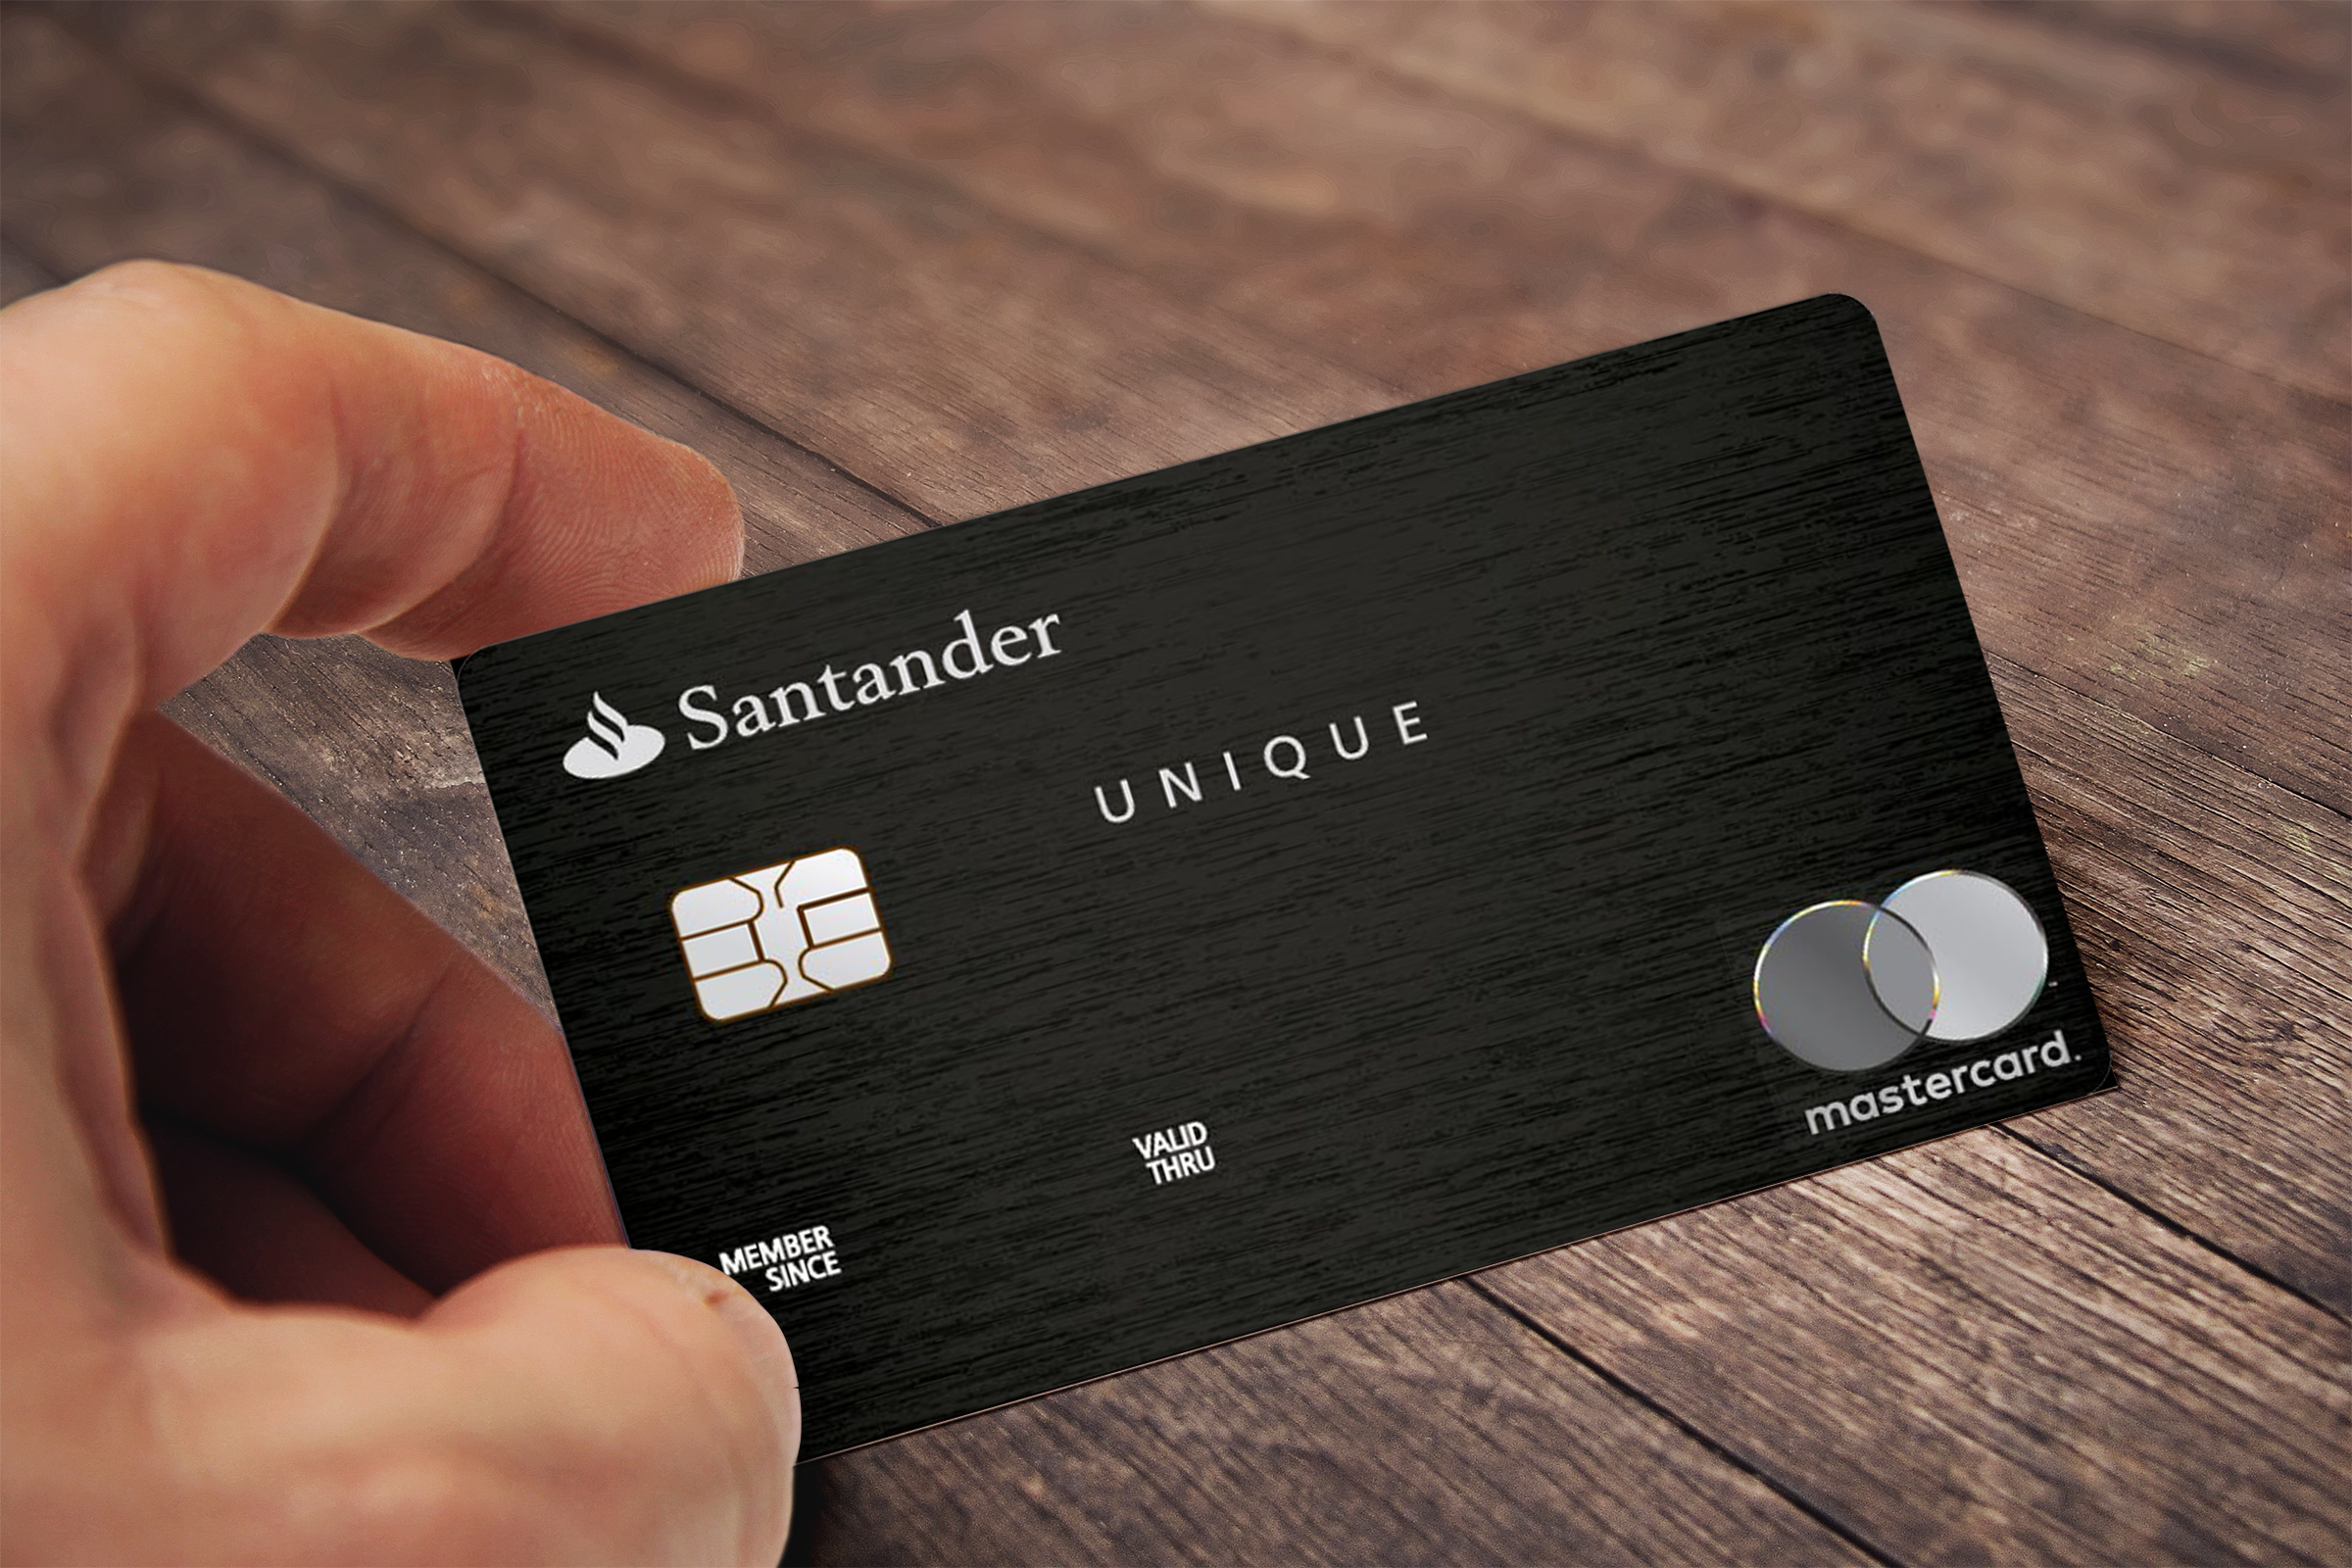 Cartão de Crédito Santander Unique